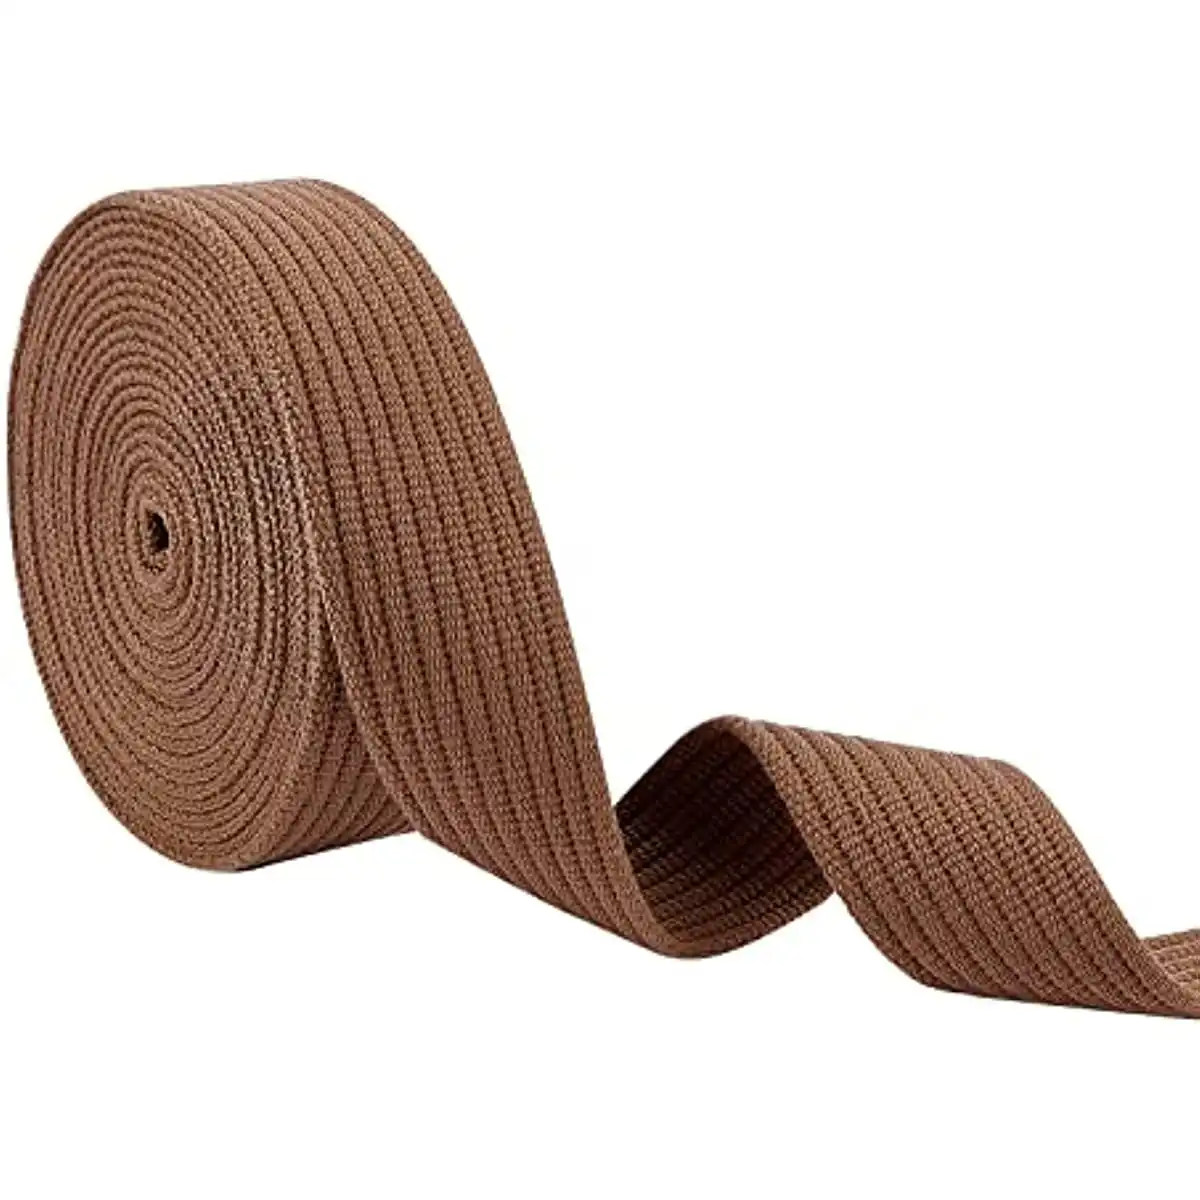 Fascia di resistenza in gomma popolare protezione con Logo stampato in Nylon morbido lavorato a maglia fascia elastica nastro elastico cinturino elastico cinturino in cinghia